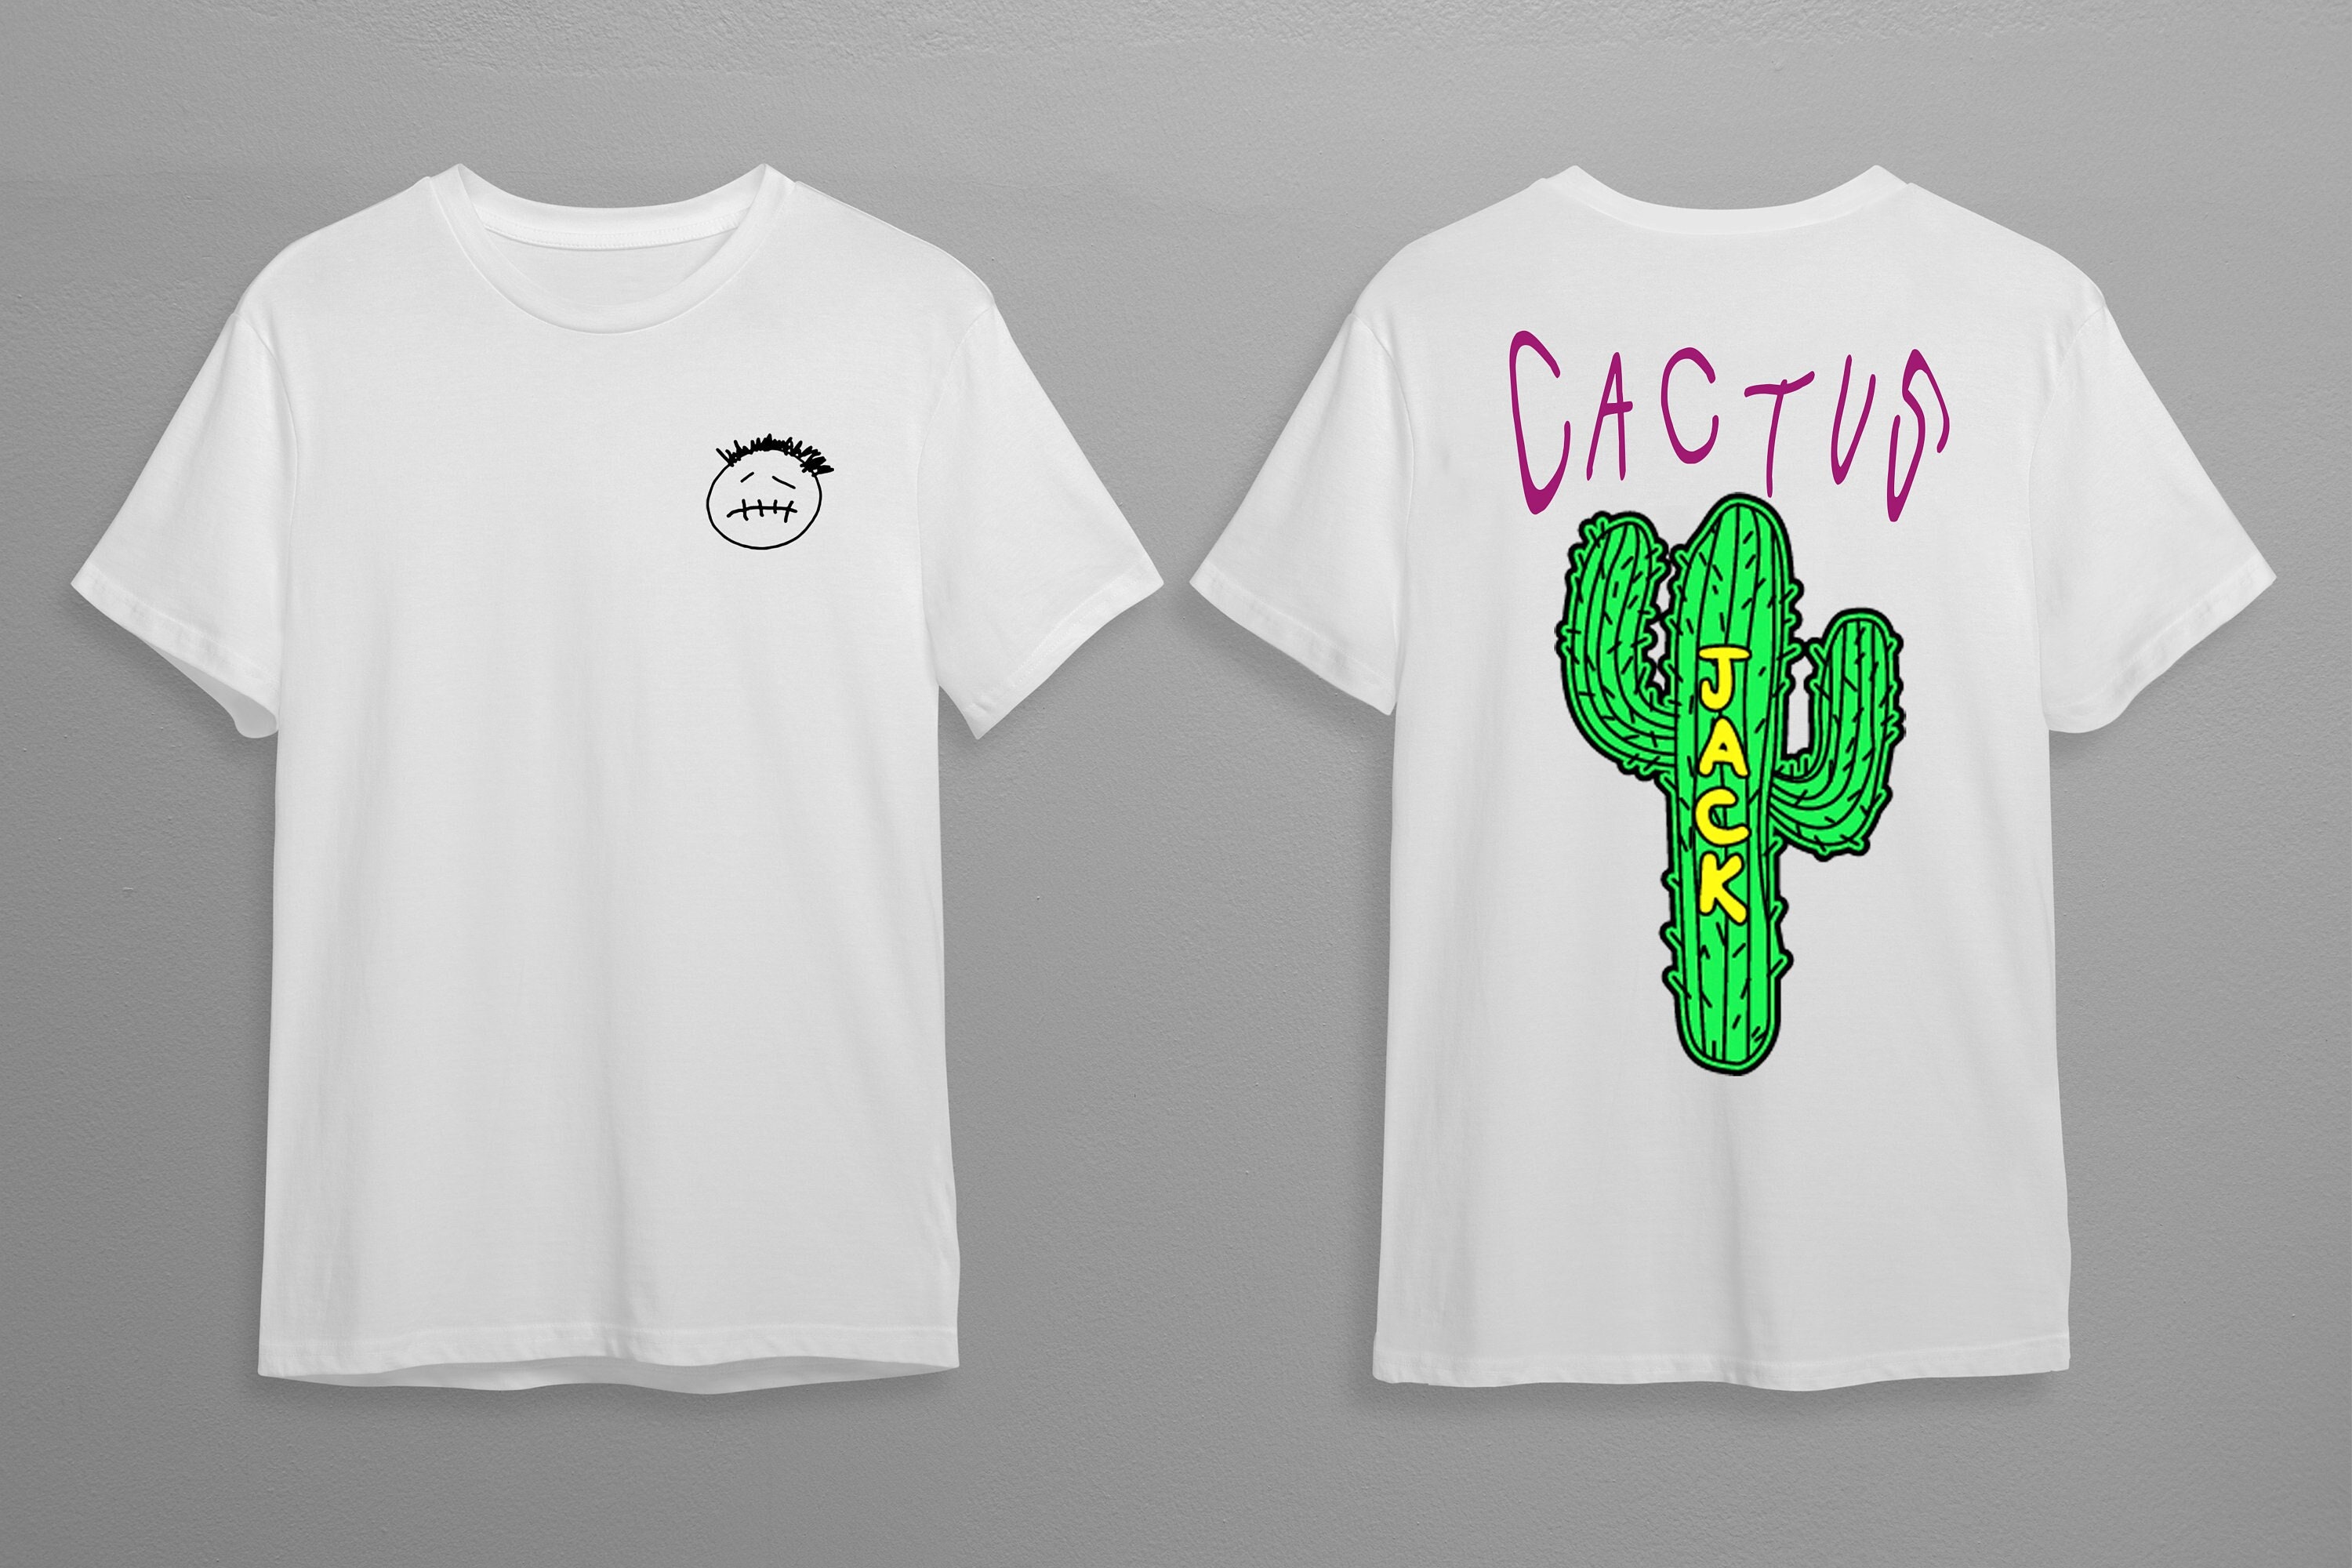 cactus jack tee